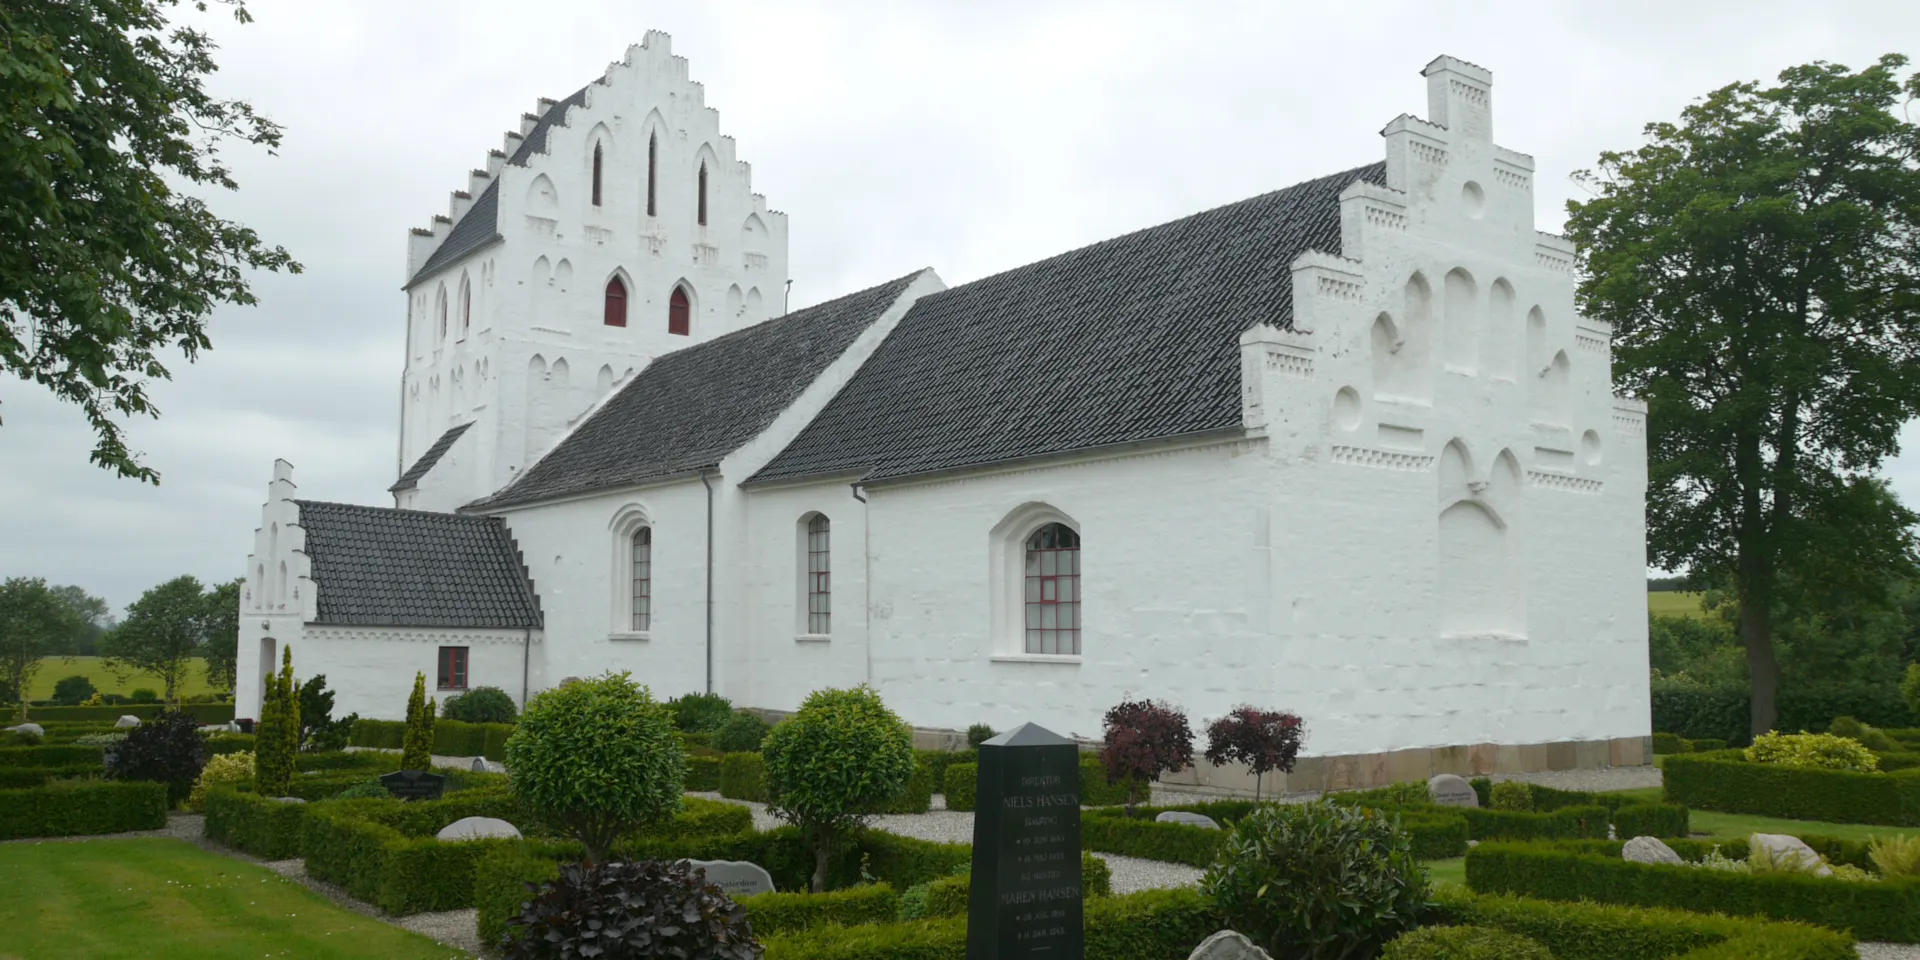 Attraktioner
Kirke
Landsbykirke
Middelfart
Lillebælt Waters
Visitmiddelfart
